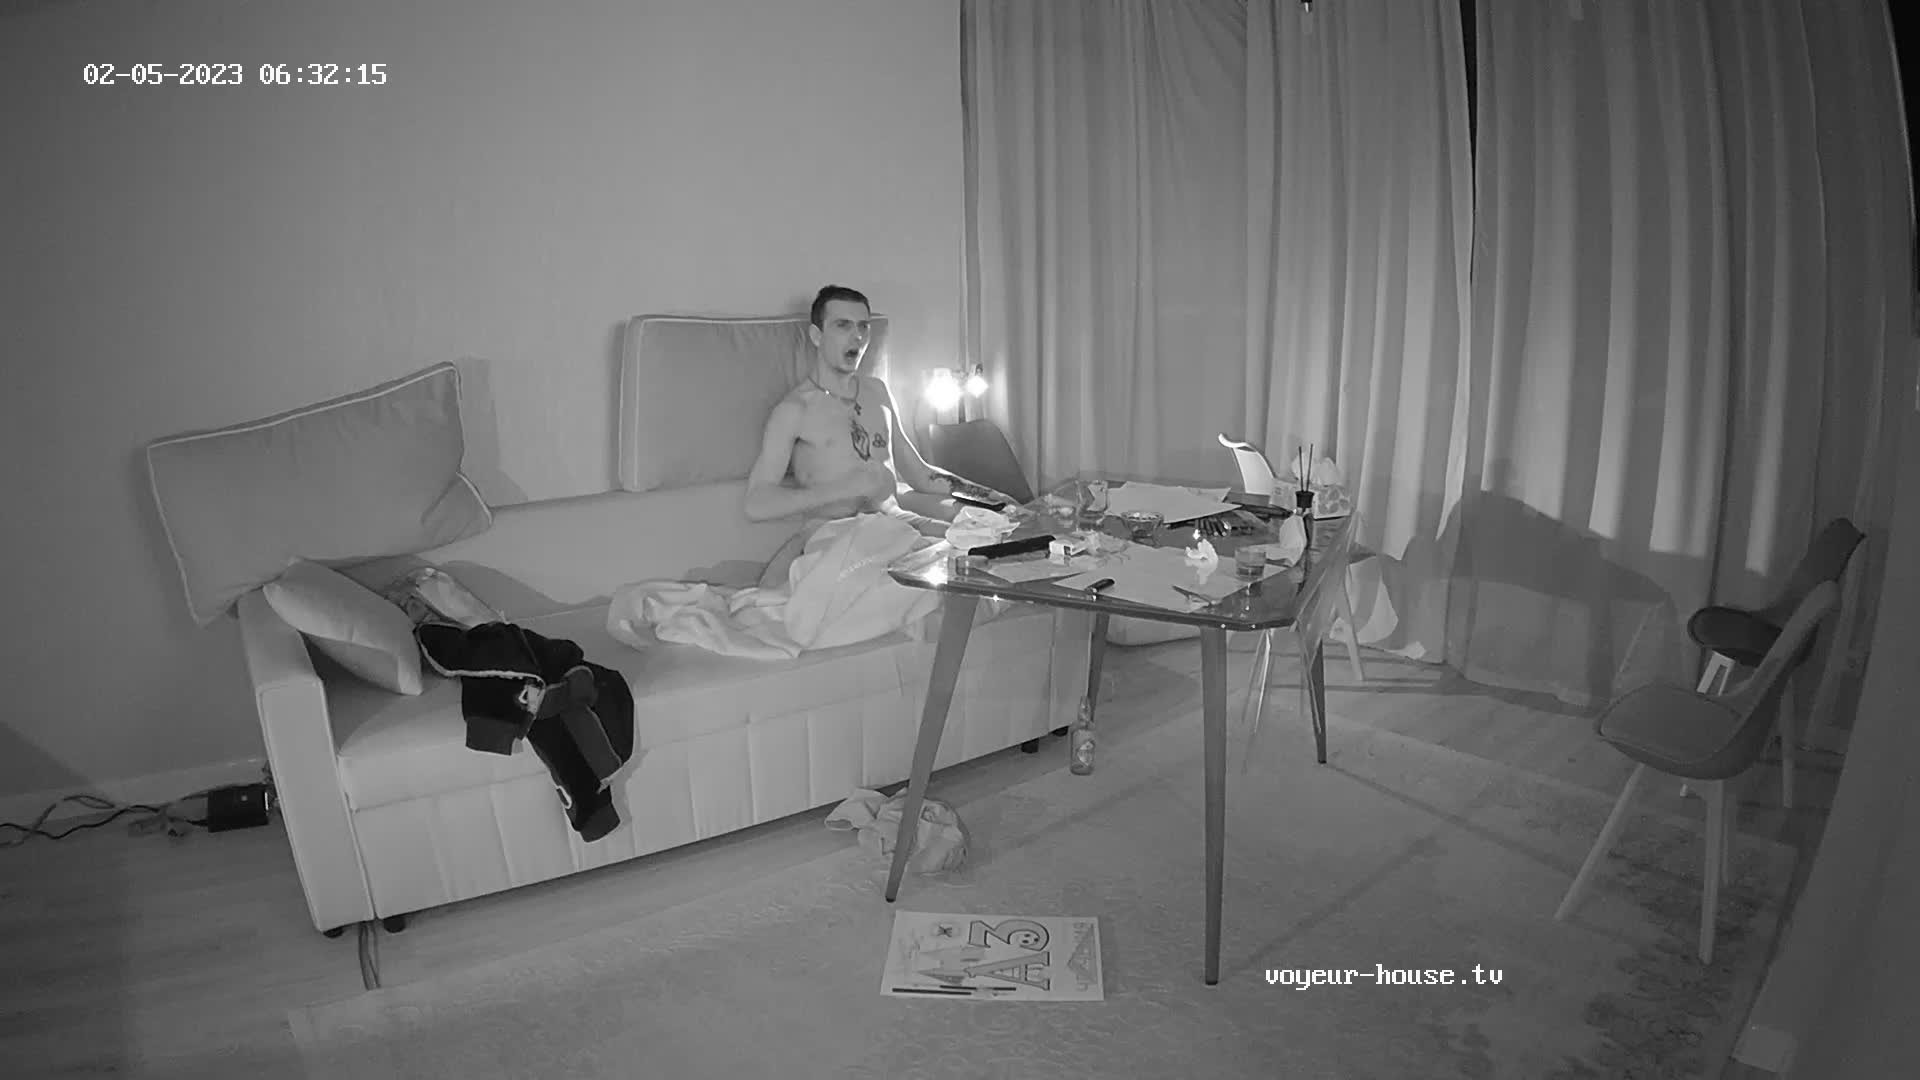 Artem jerking in the livingroom 5 Feb 2023